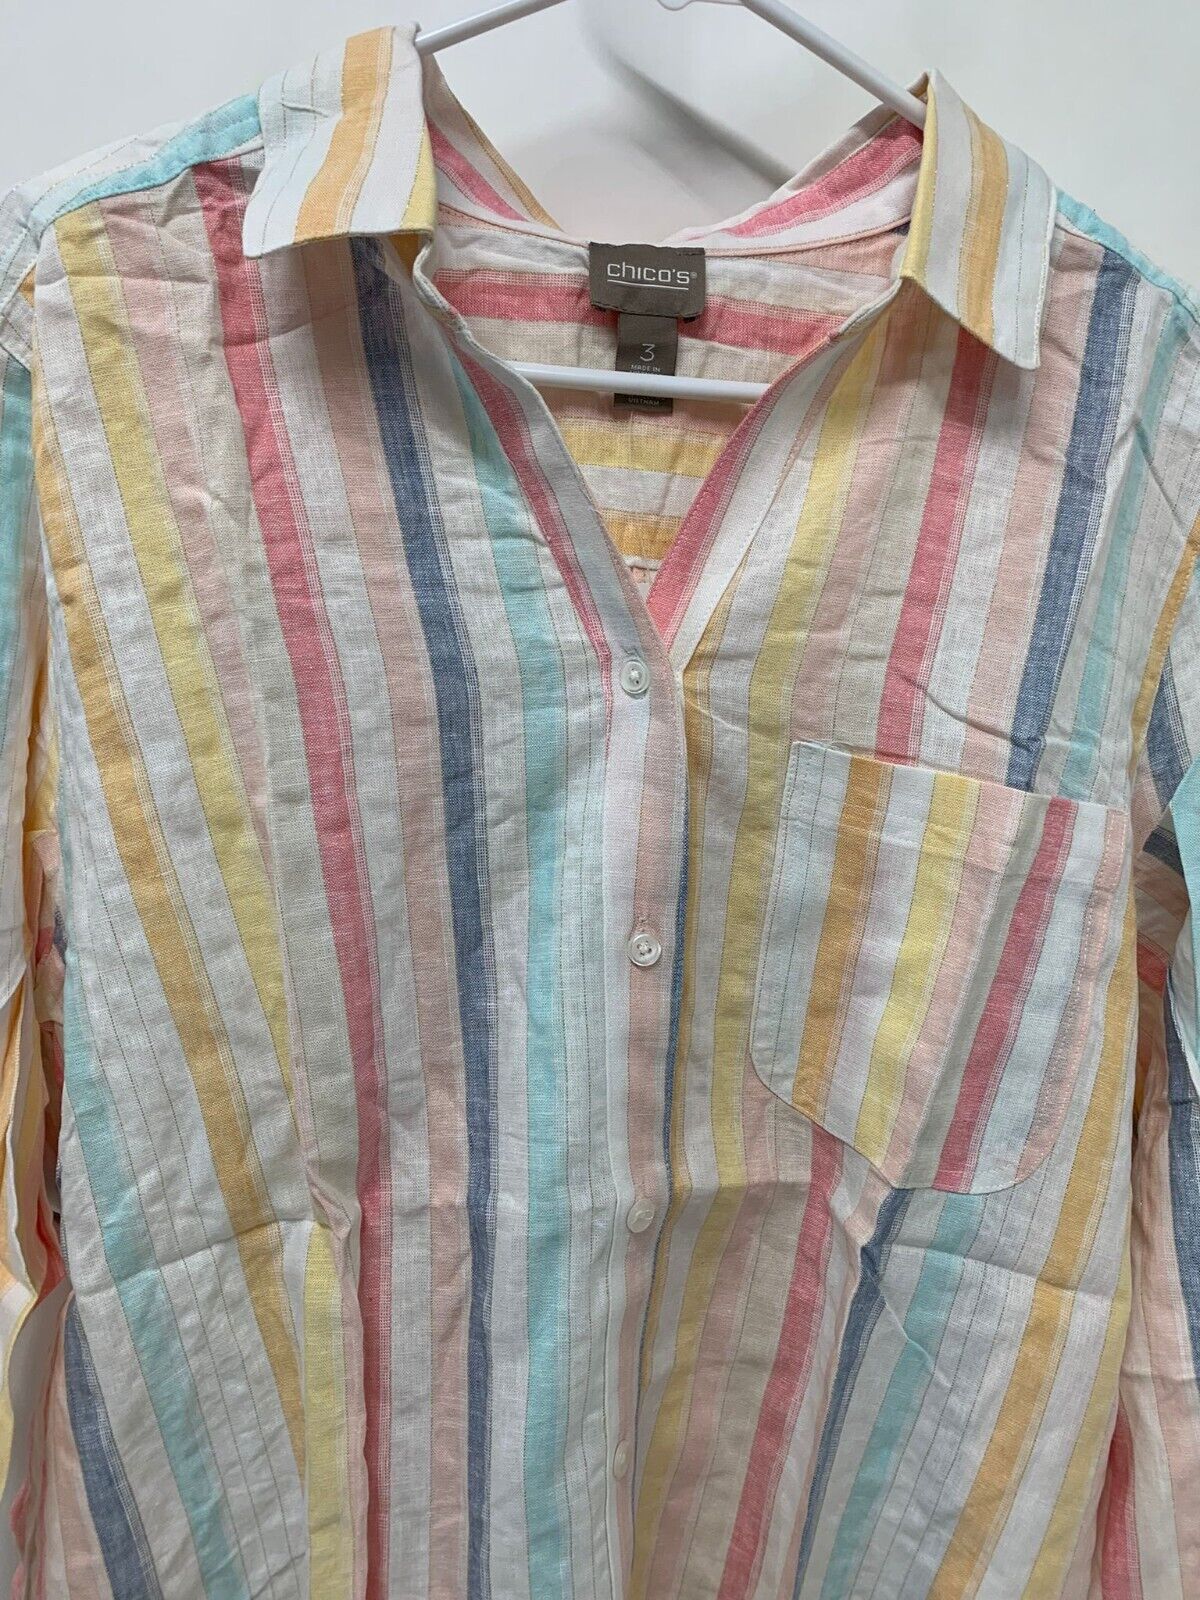 Chicos Womens 3 Tie Sleeve Button Front Shirt Top Hana Stripe Linen Blend